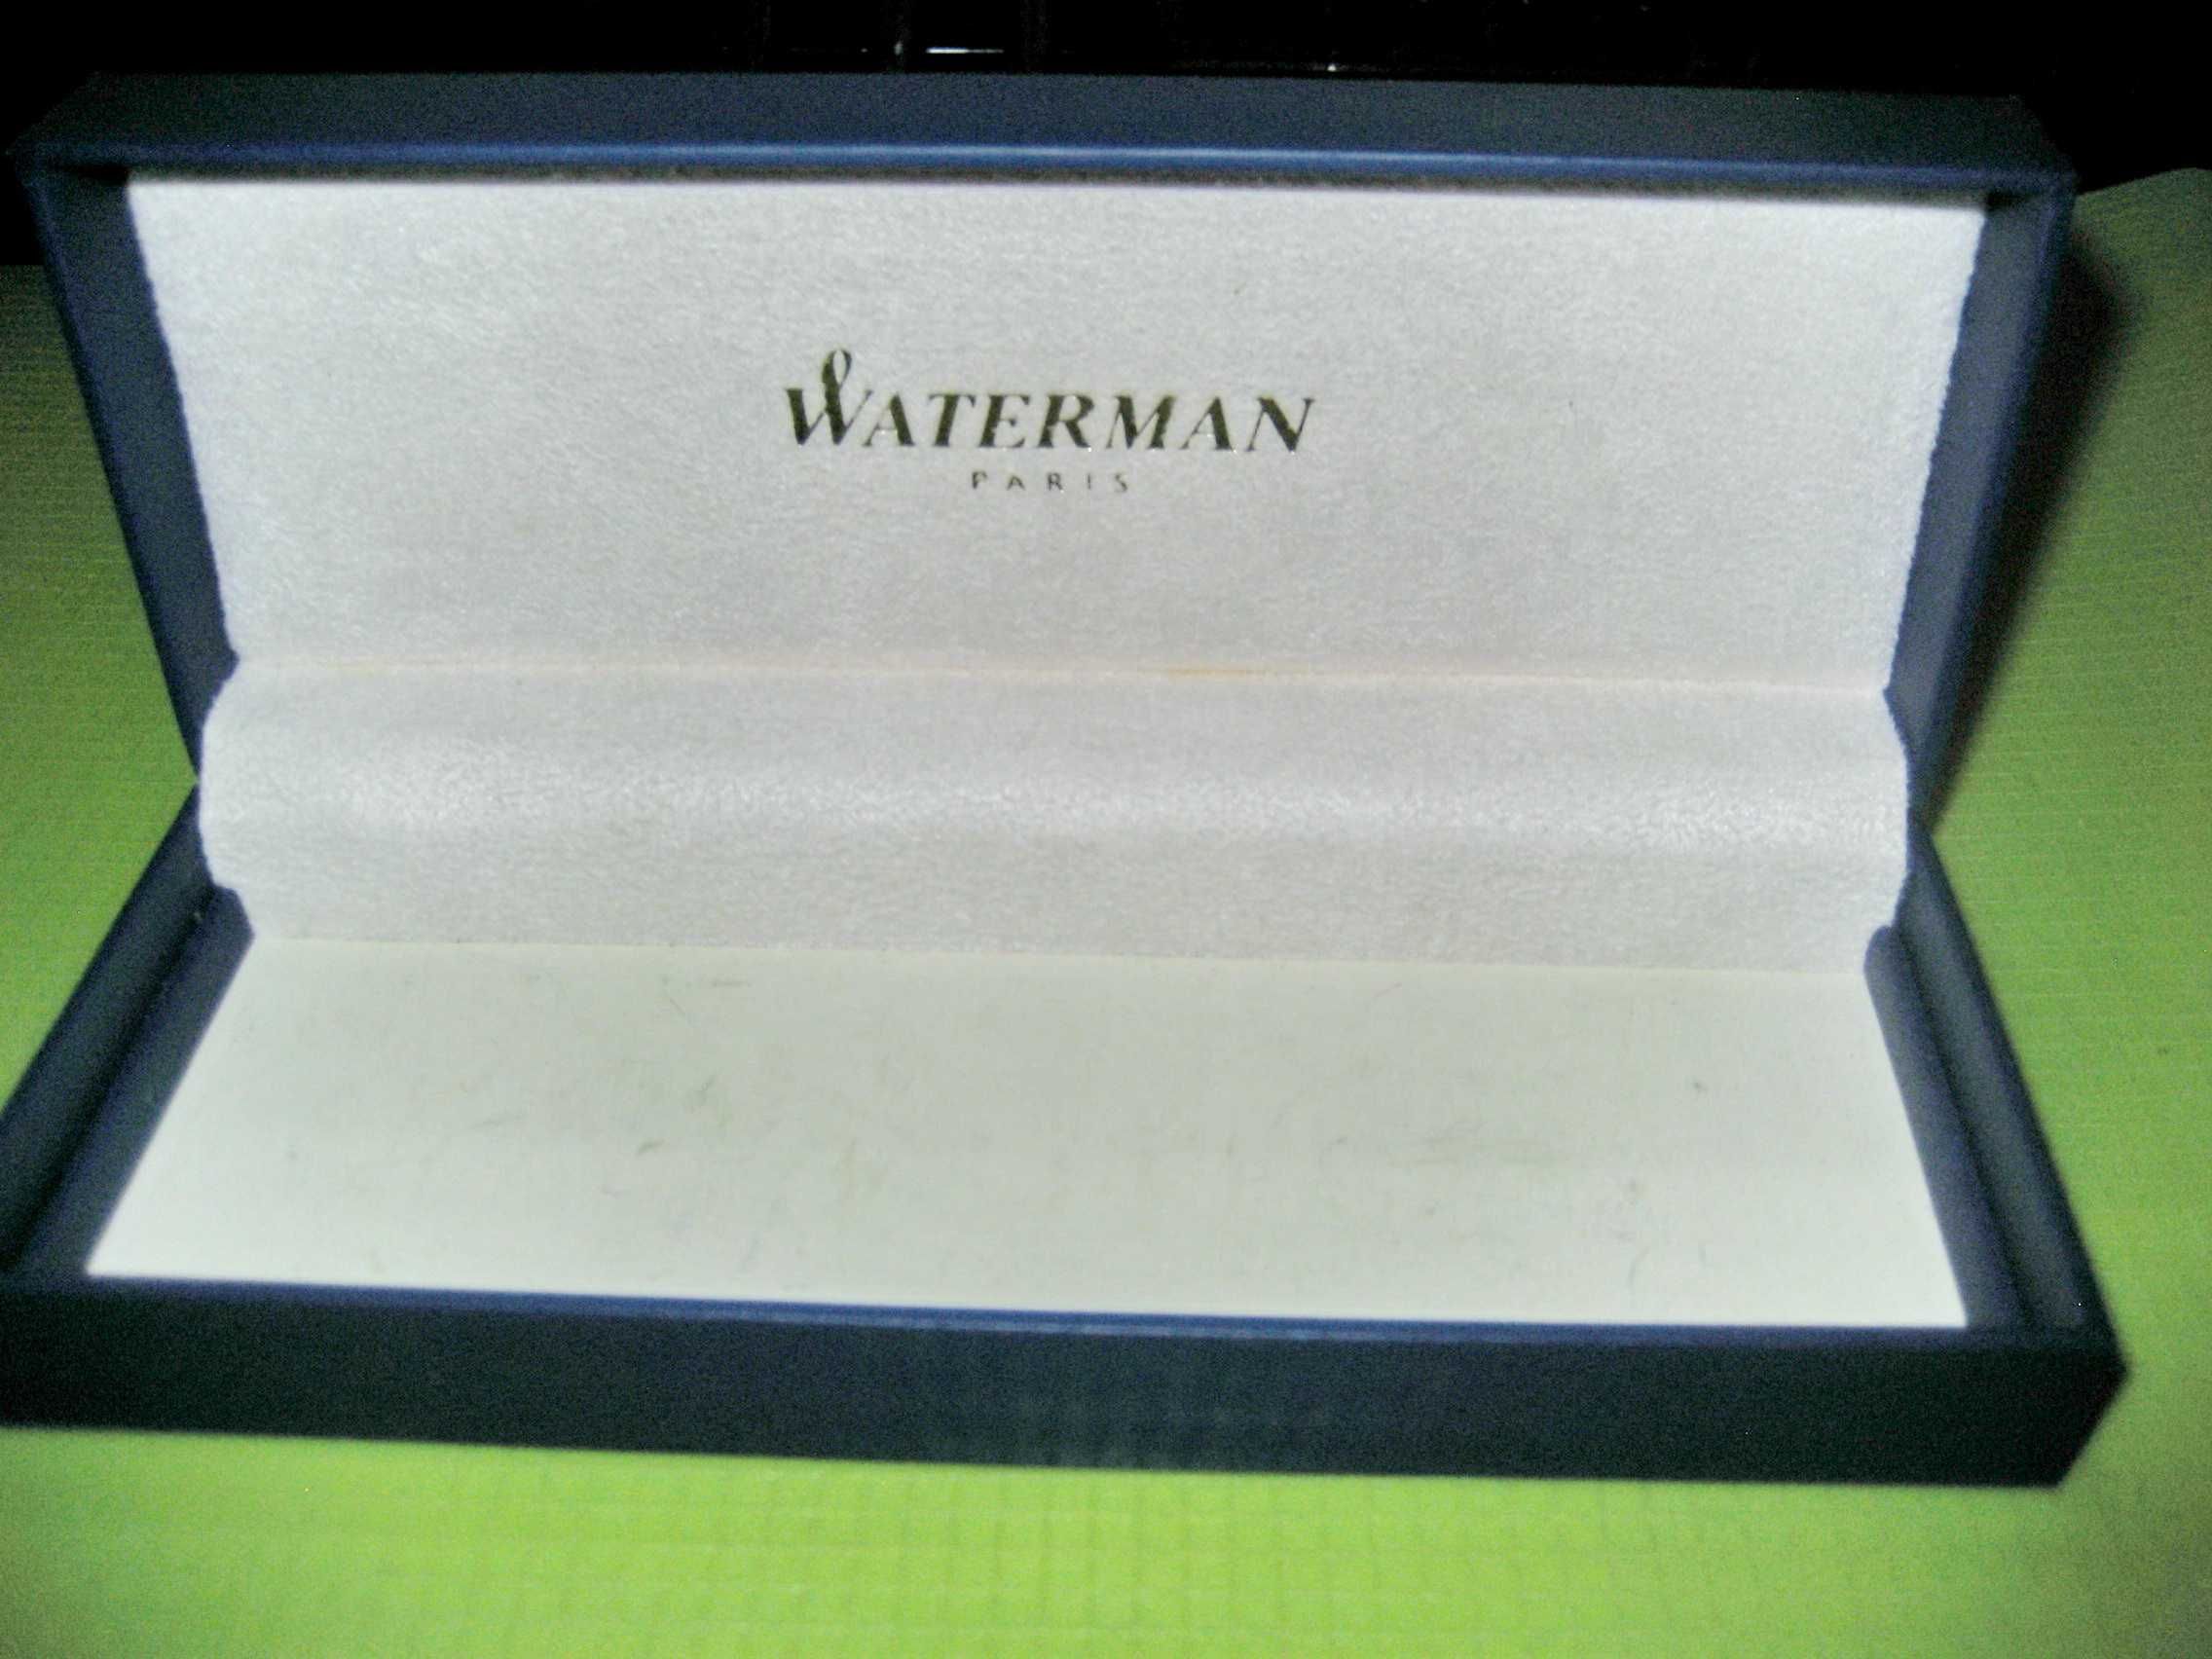 9830-Cutie originala stilou Waterman Paris. Lungime 17.5 cm.